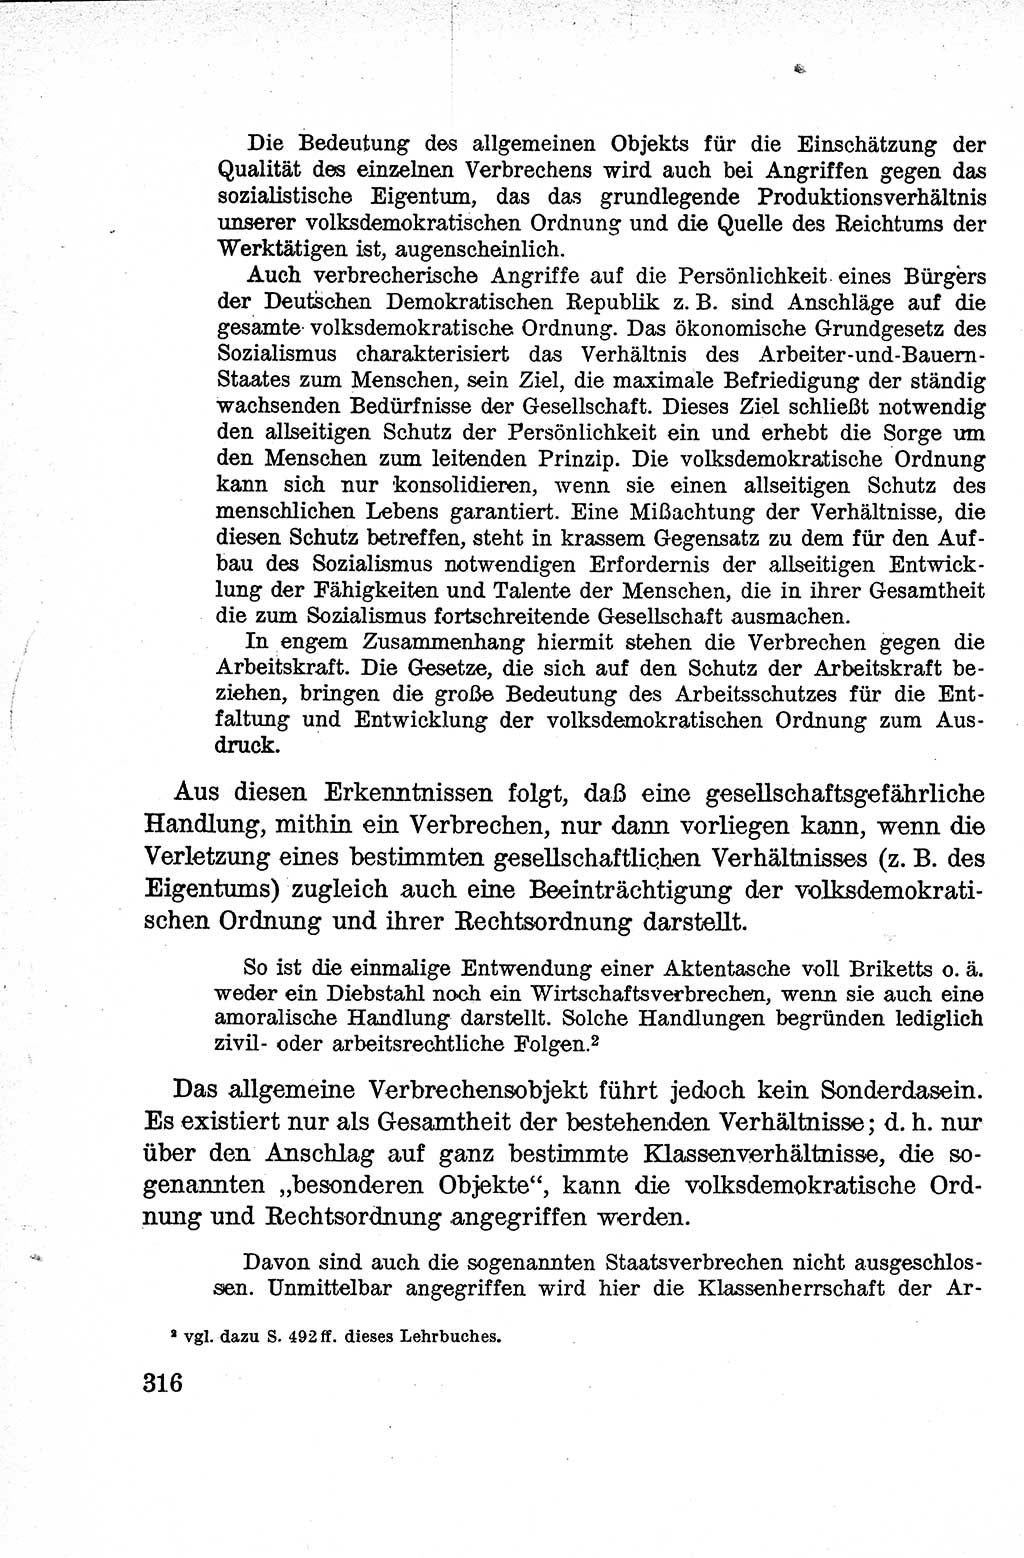 Lehrbuch des Strafrechts der Deutschen Demokratischen Republik (DDR), Allgemeiner Teil 1959, Seite 316 (Lb. Strafr. DDR AT 1959, S. 316)